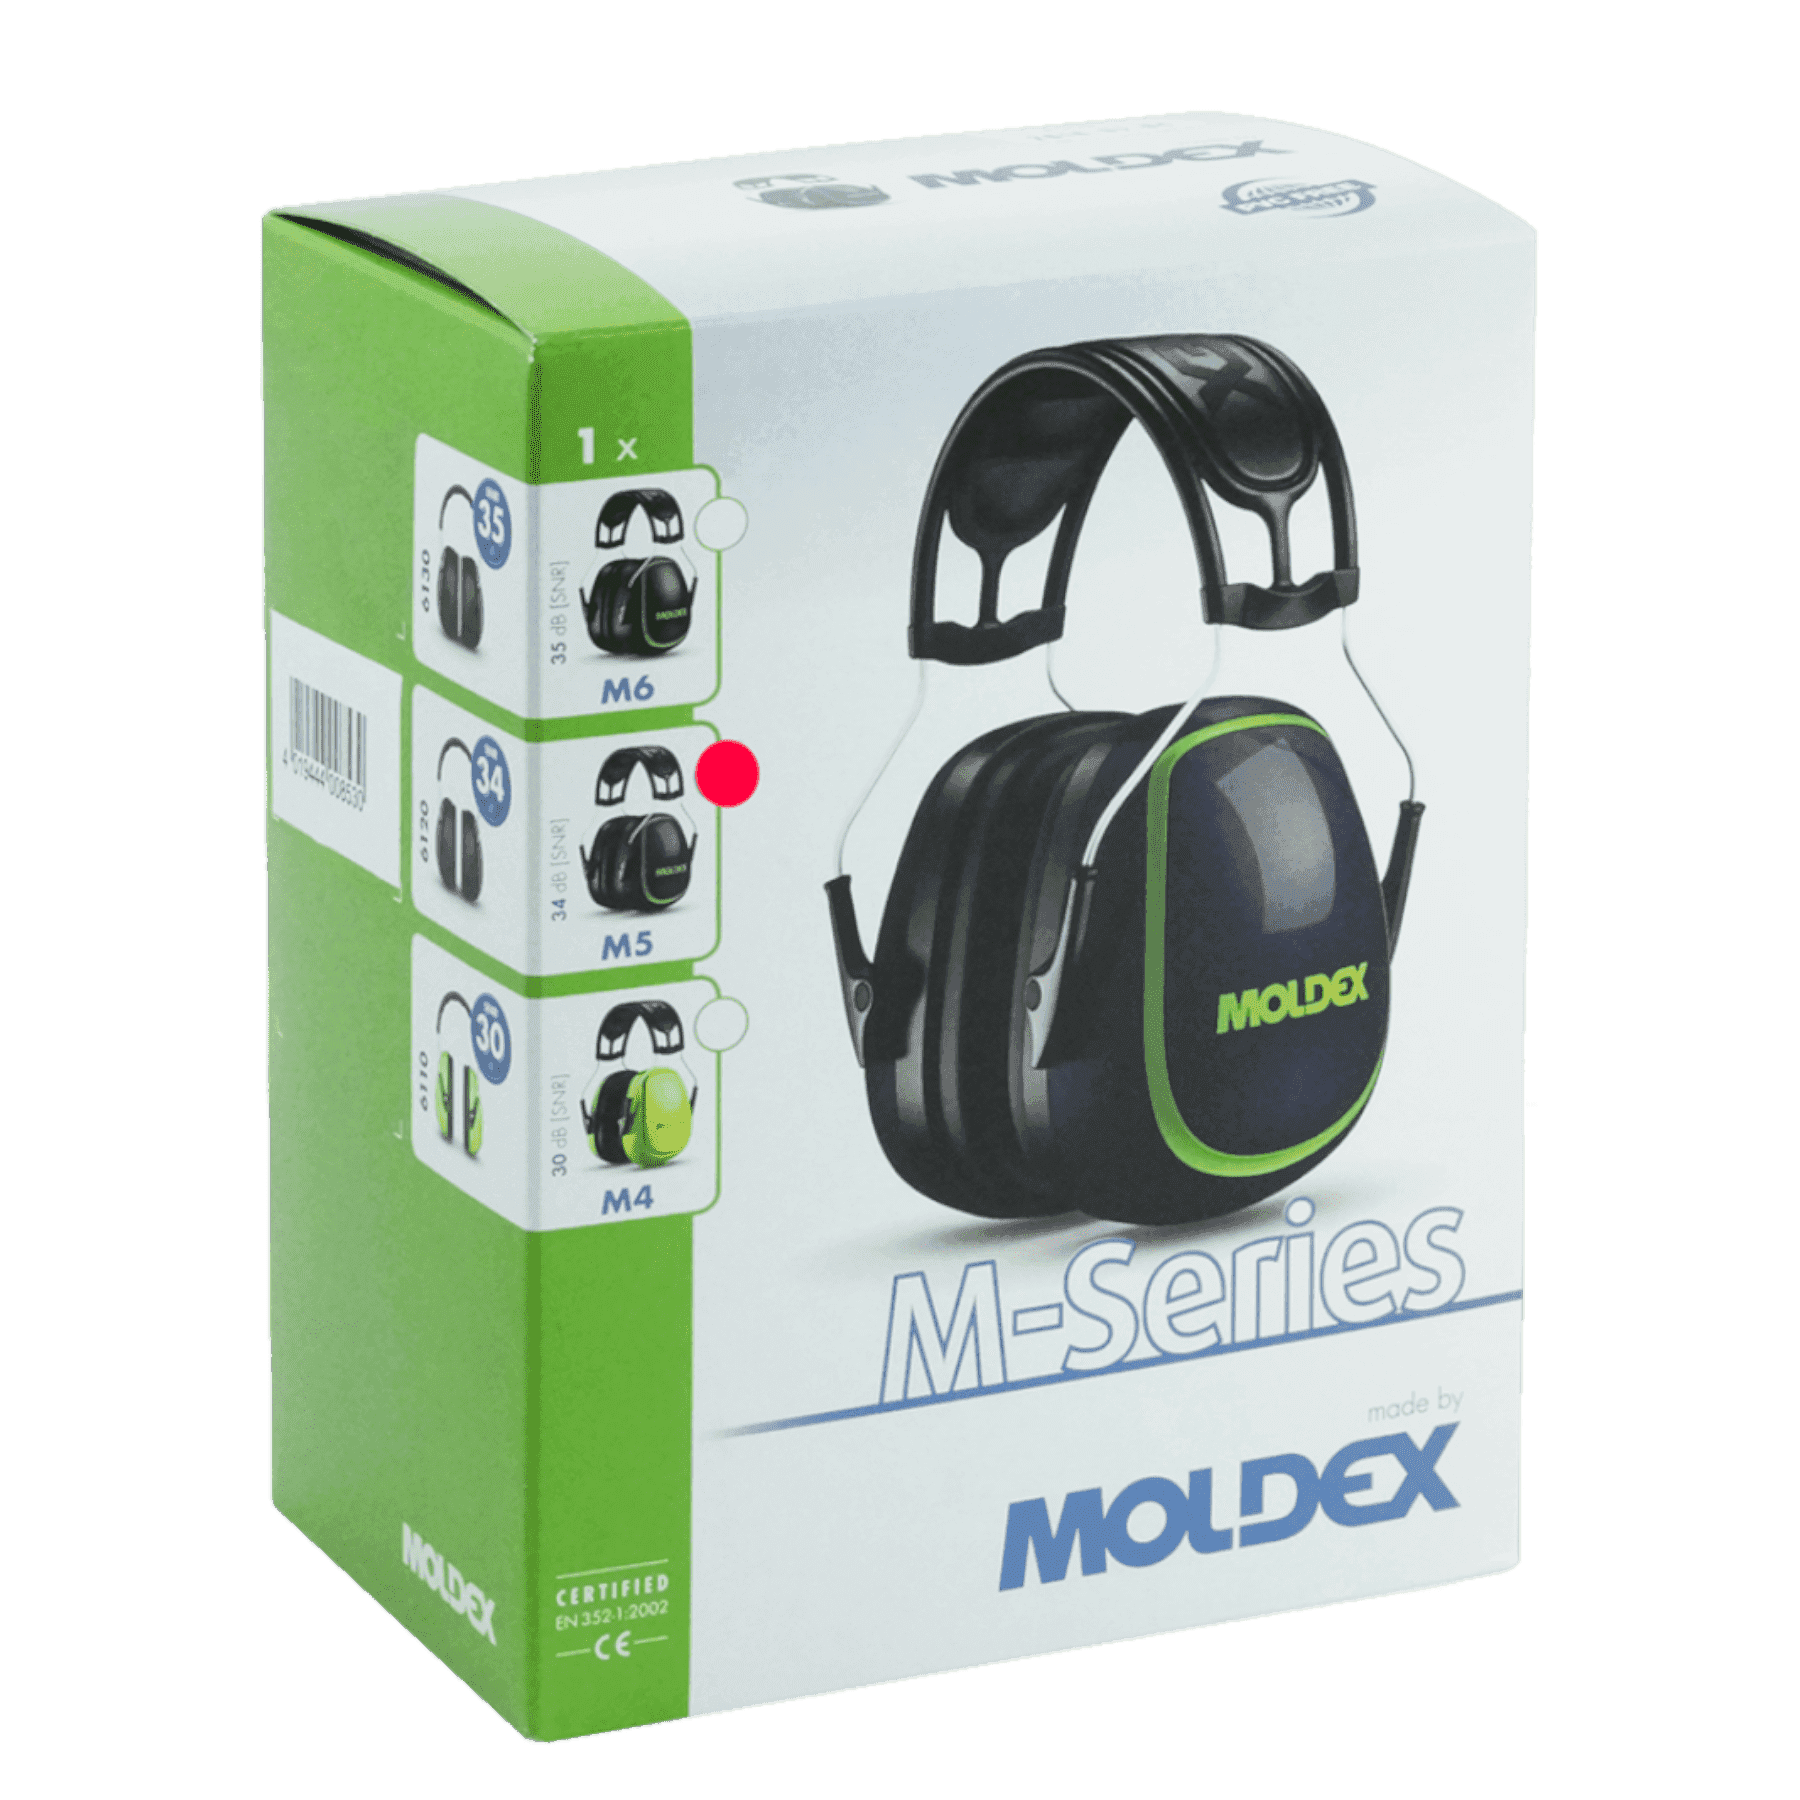 M5 Ear Defenders SNR 34 dB Moldex